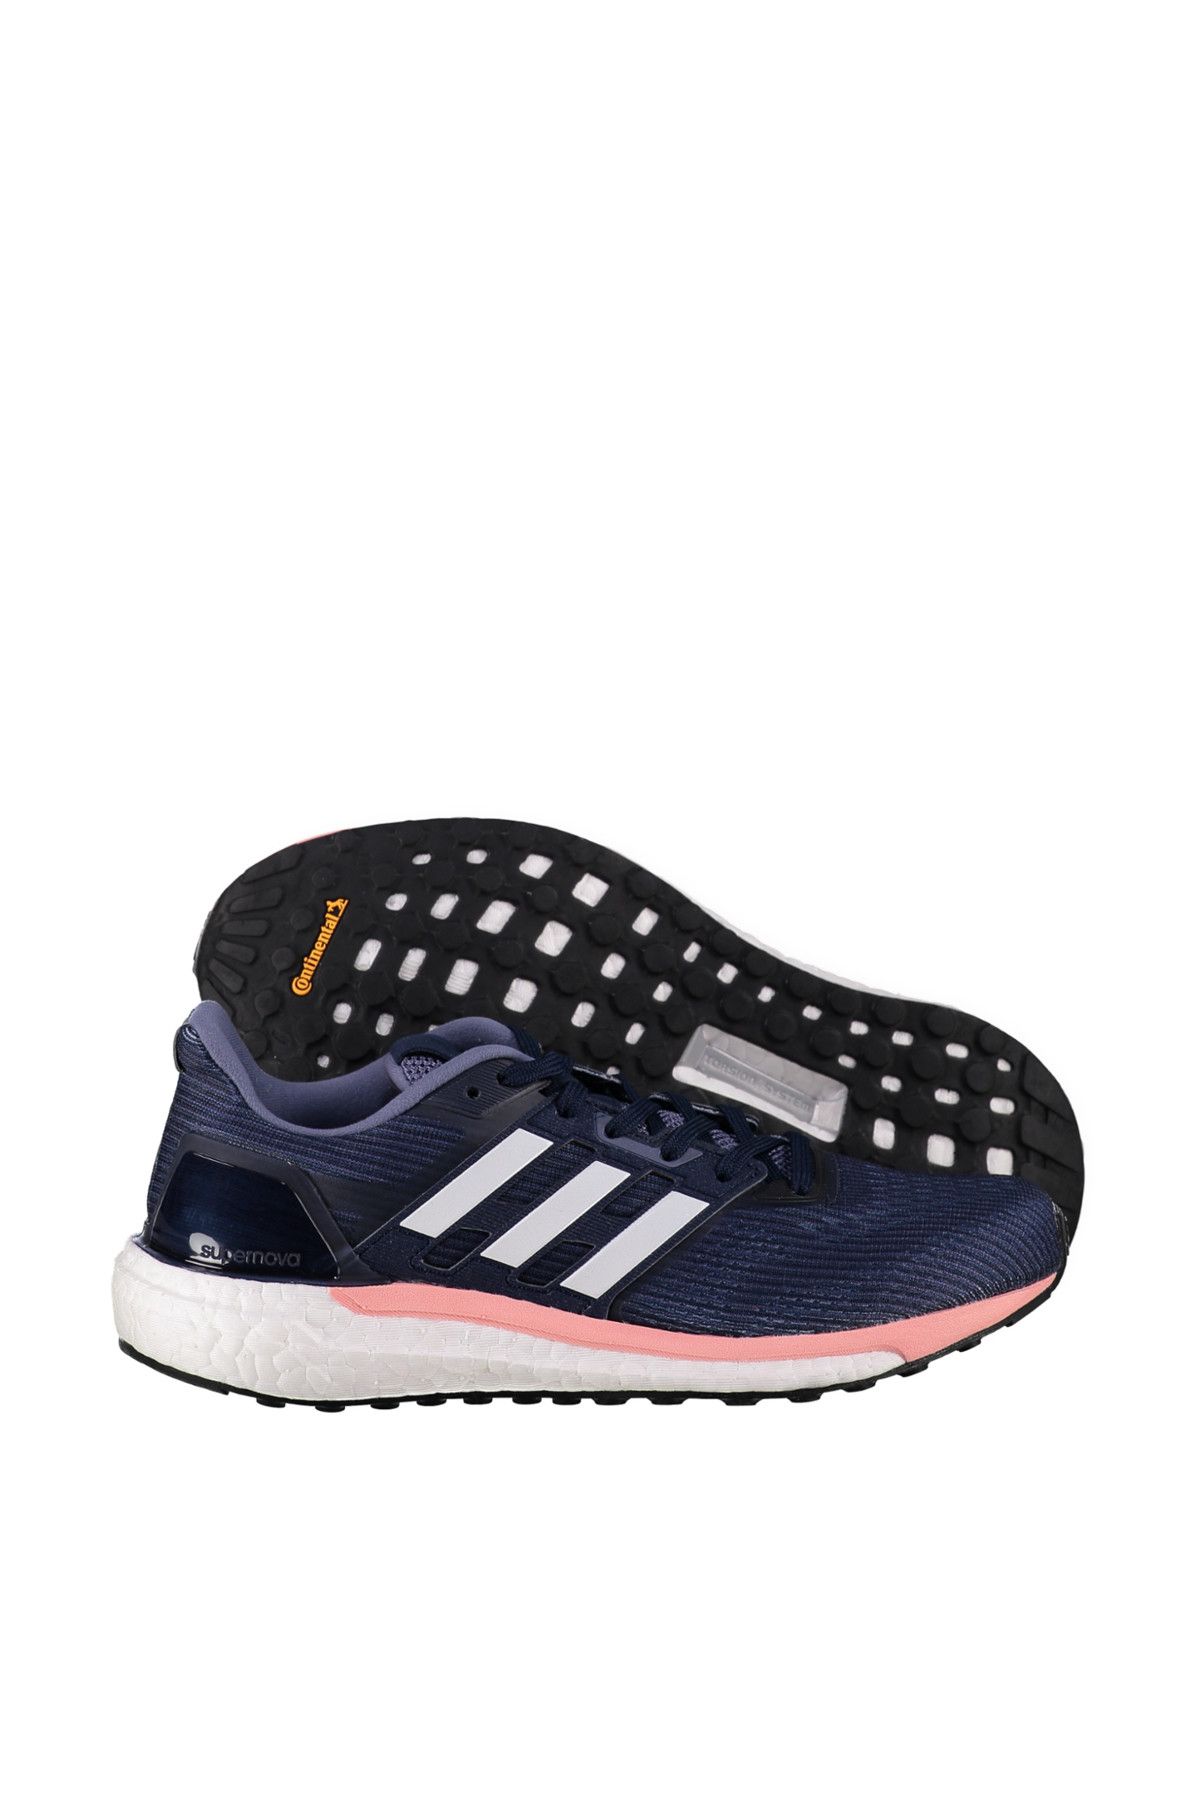 adidas Kadın Koşu & Antrenman Ayakkabısı  - Supernova W - BB6038